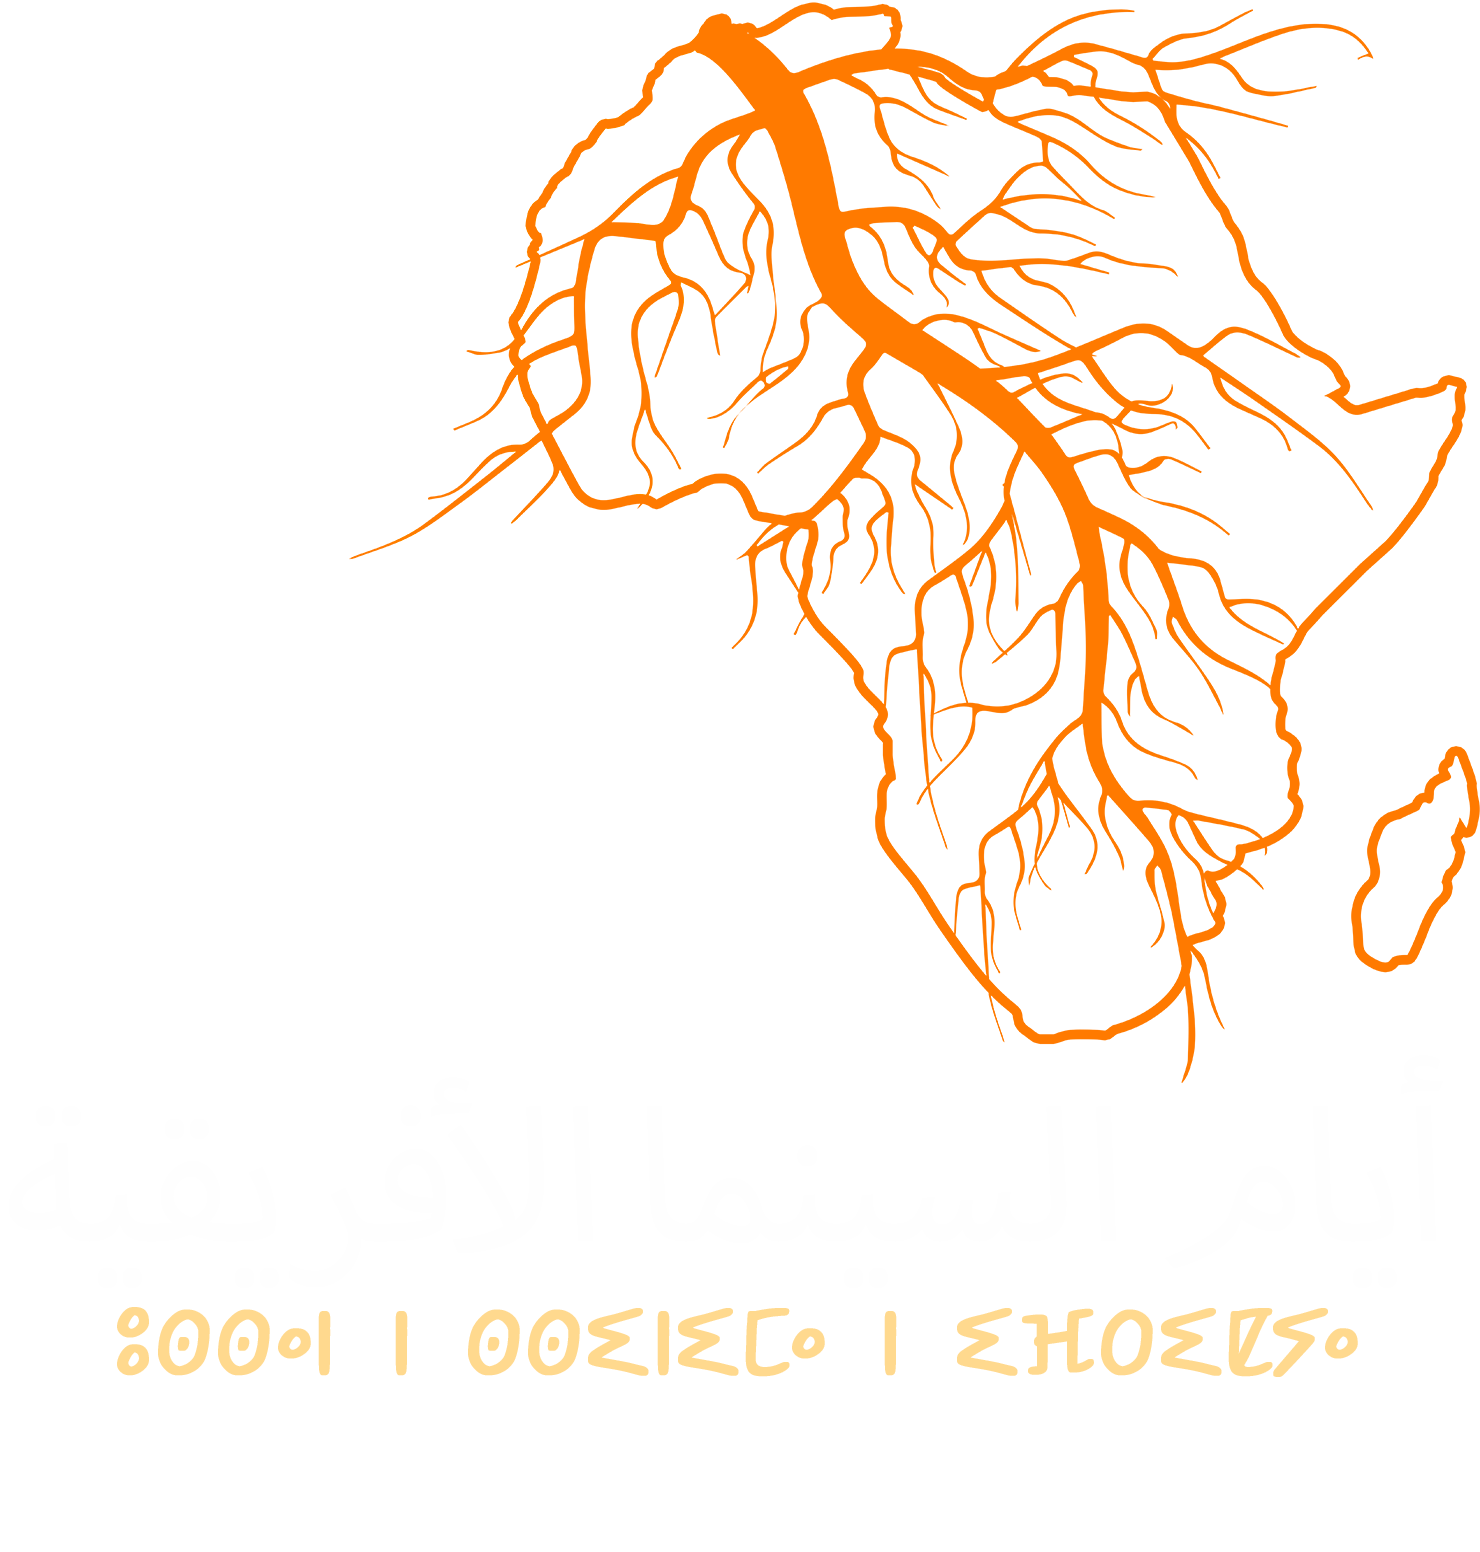 Roots Rabat